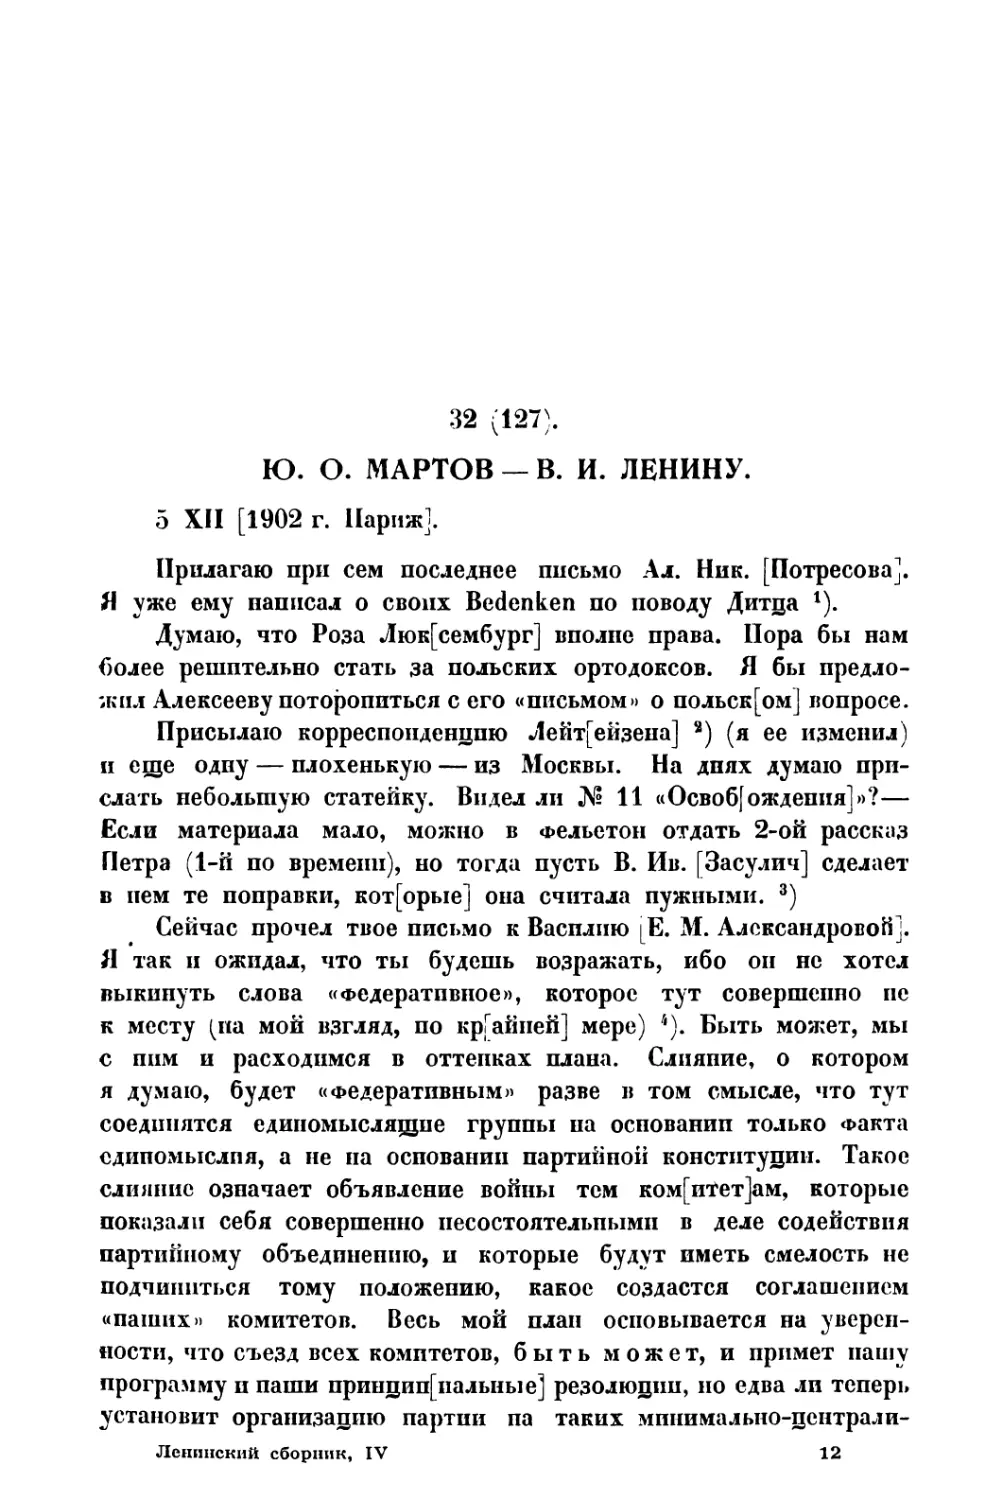 32. » В. И. Ленину от 5 XII 1902 г